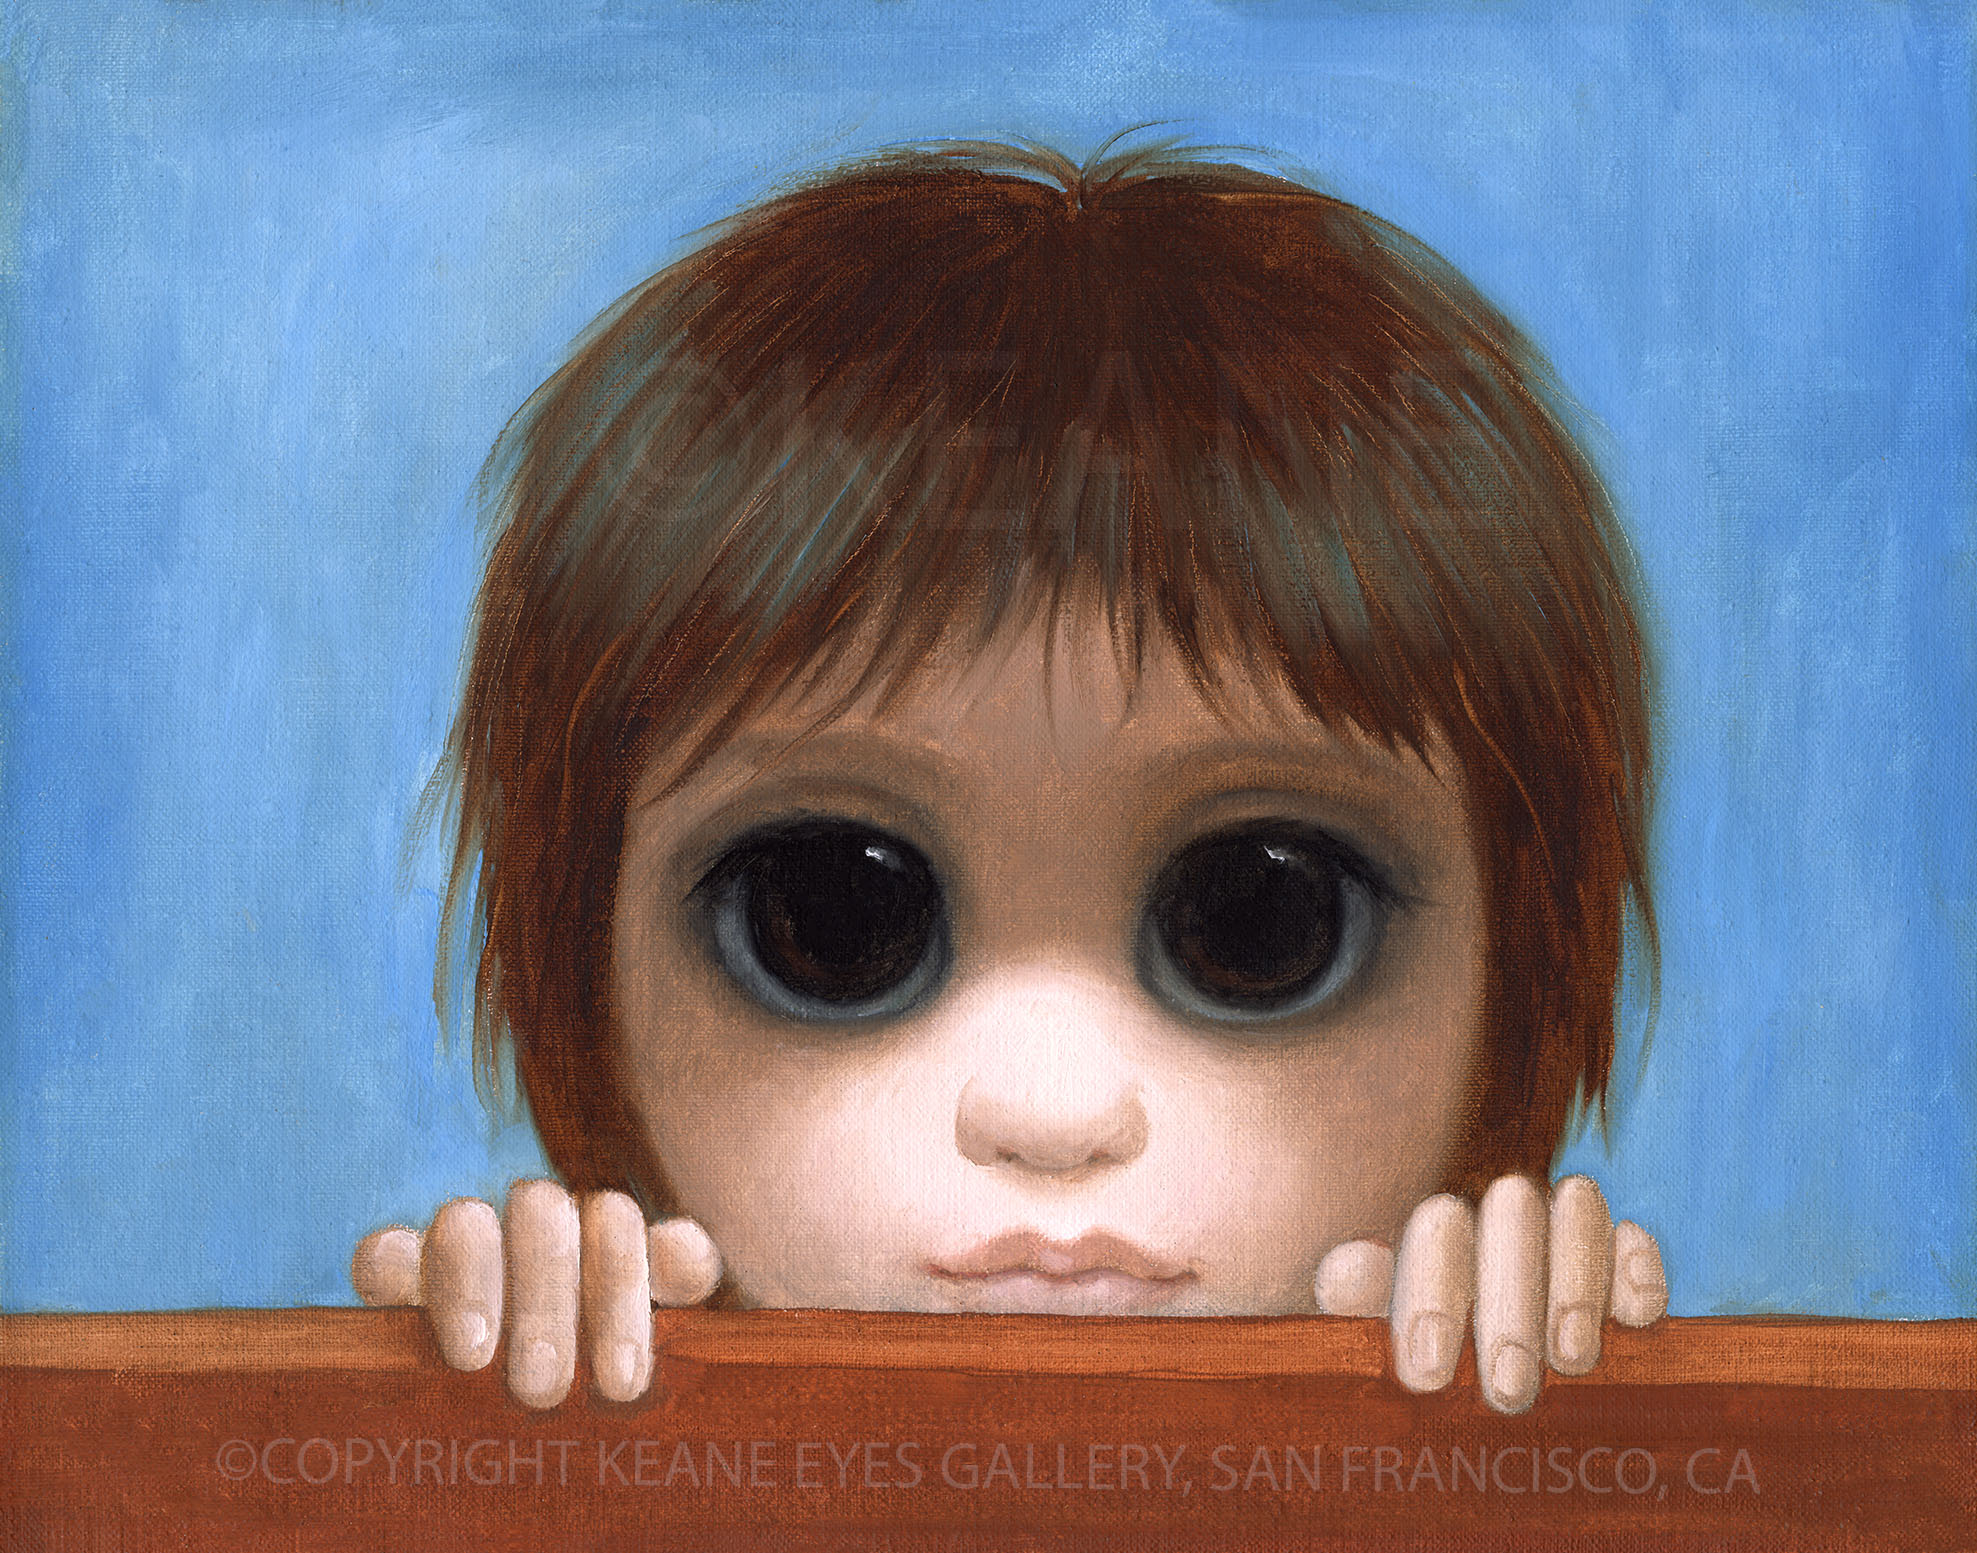 224 artist proof – Keane Eyes Gallery